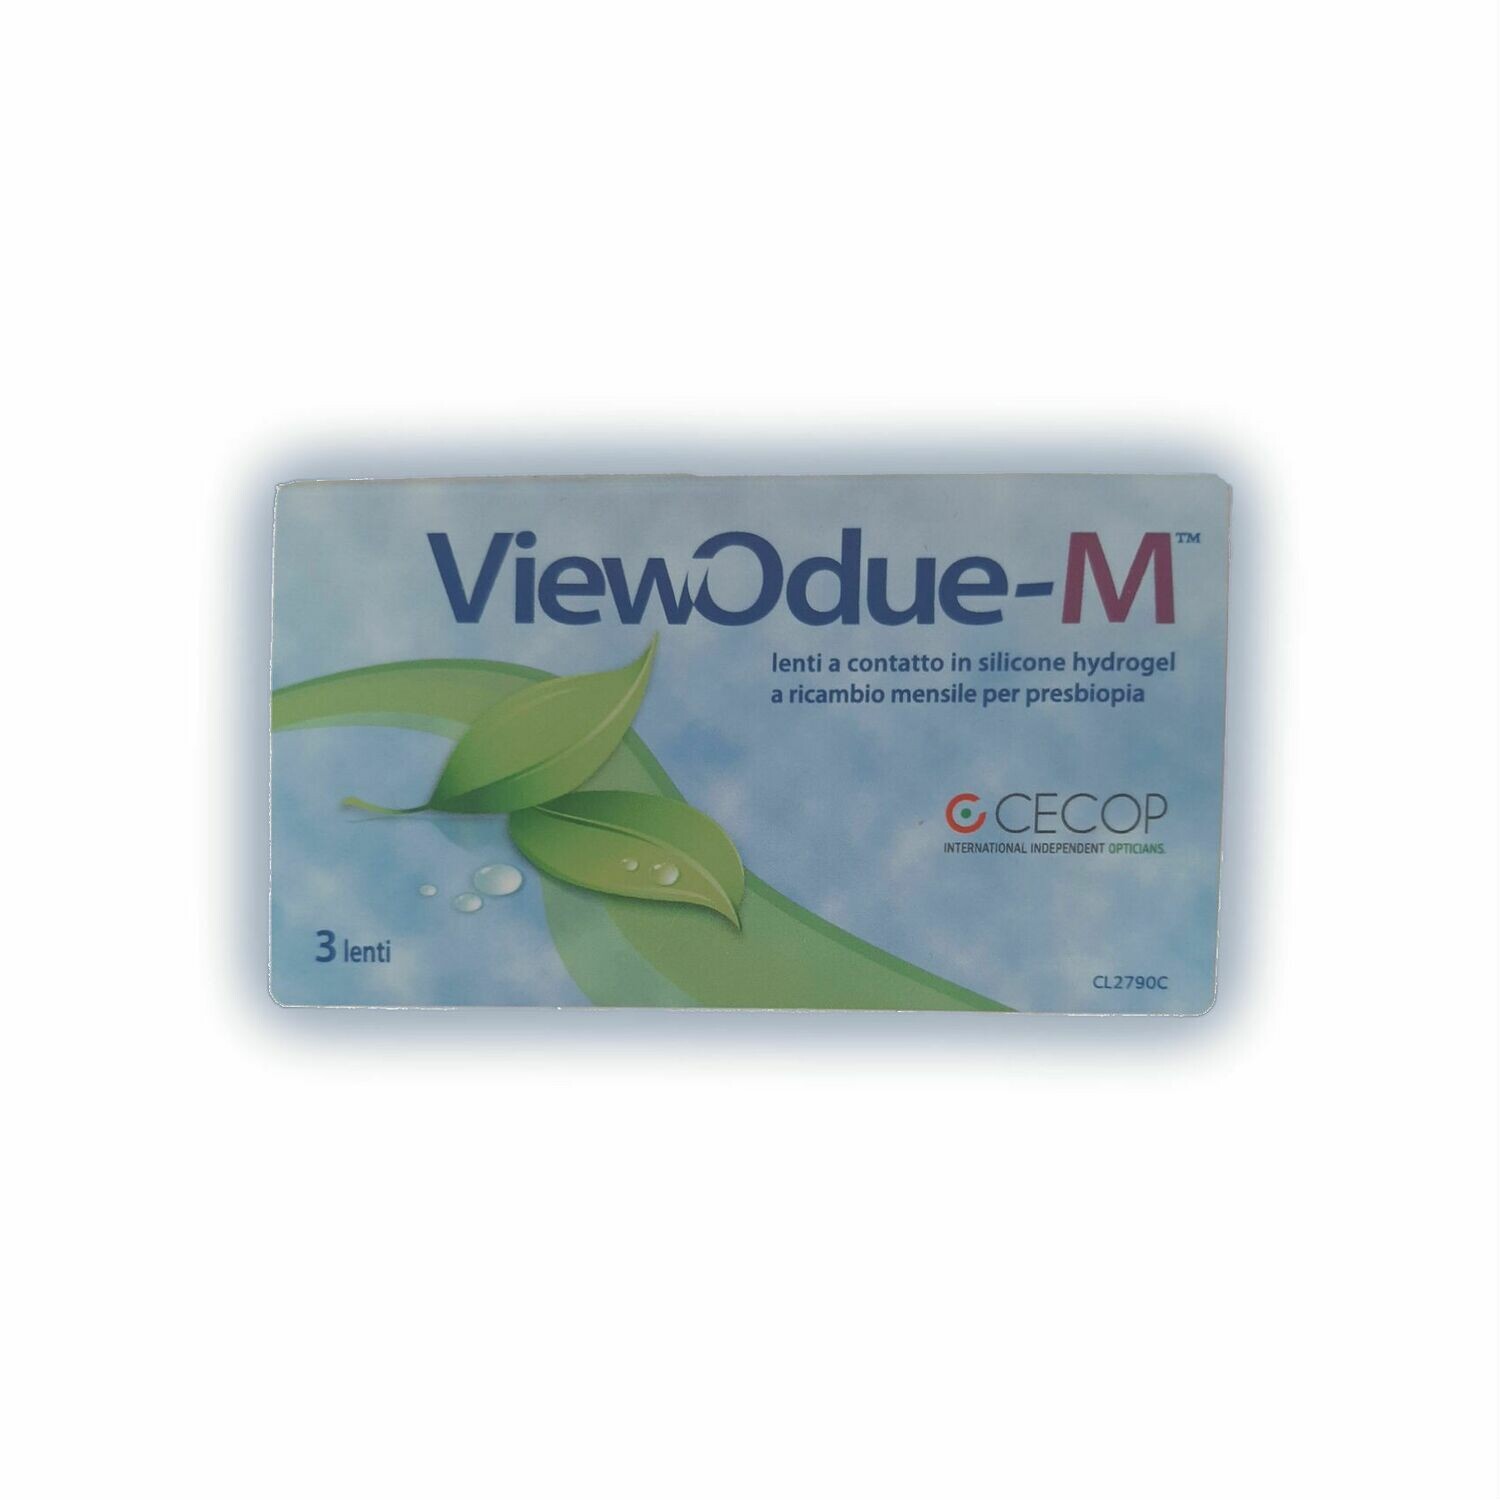 ViewOdue-M Lenti a contatto mensili multifocali 3 lenti